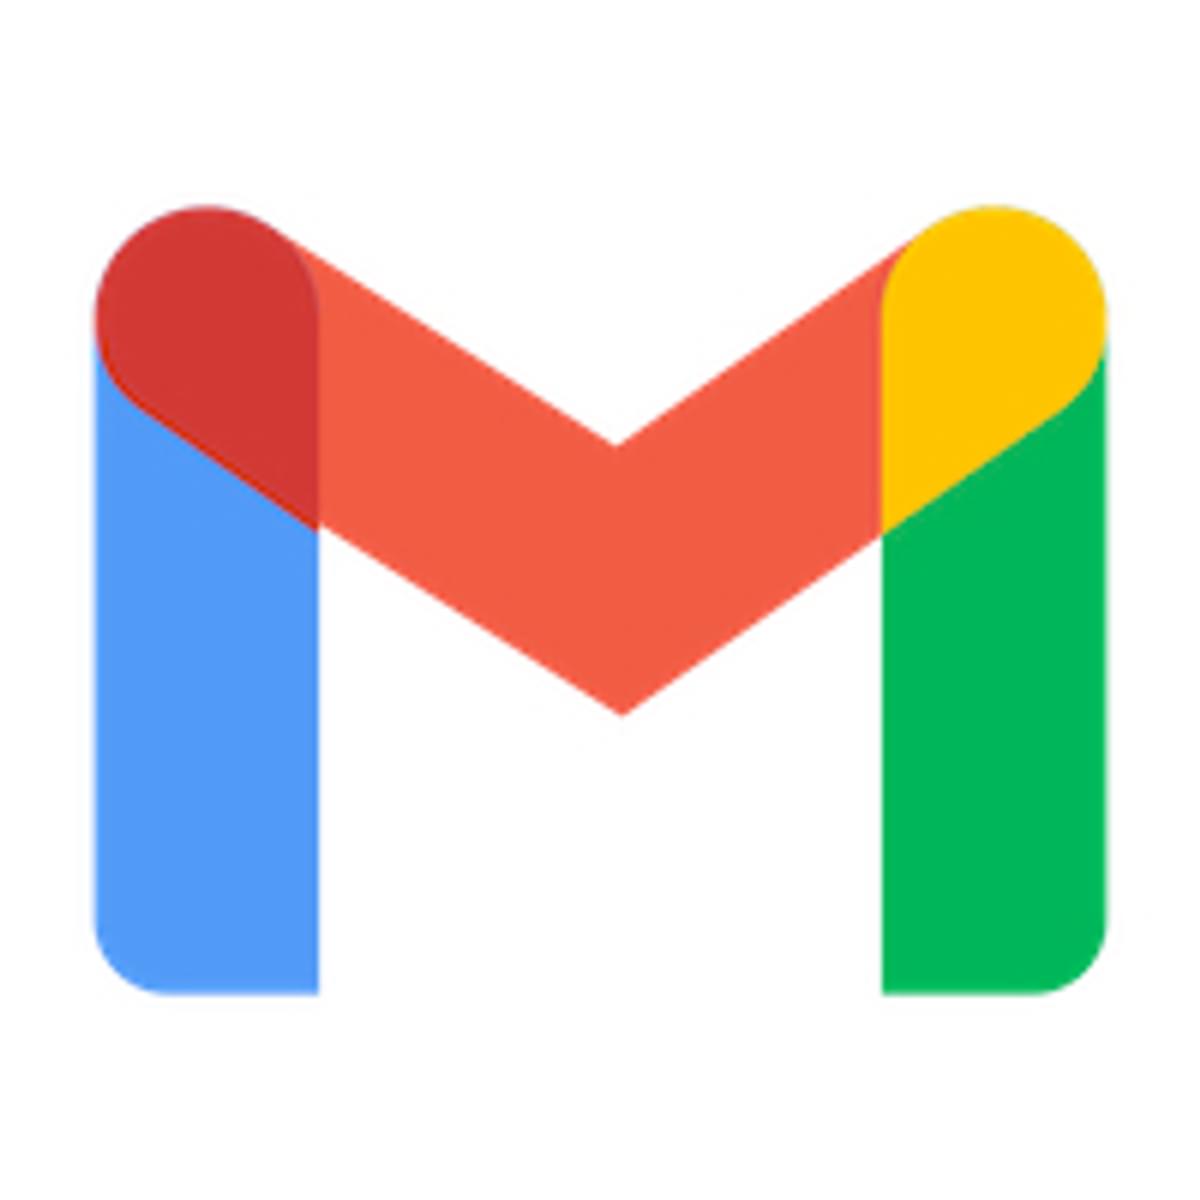 Vernieuwde interface van Gmail beschikbaar voor alle gebruikers image